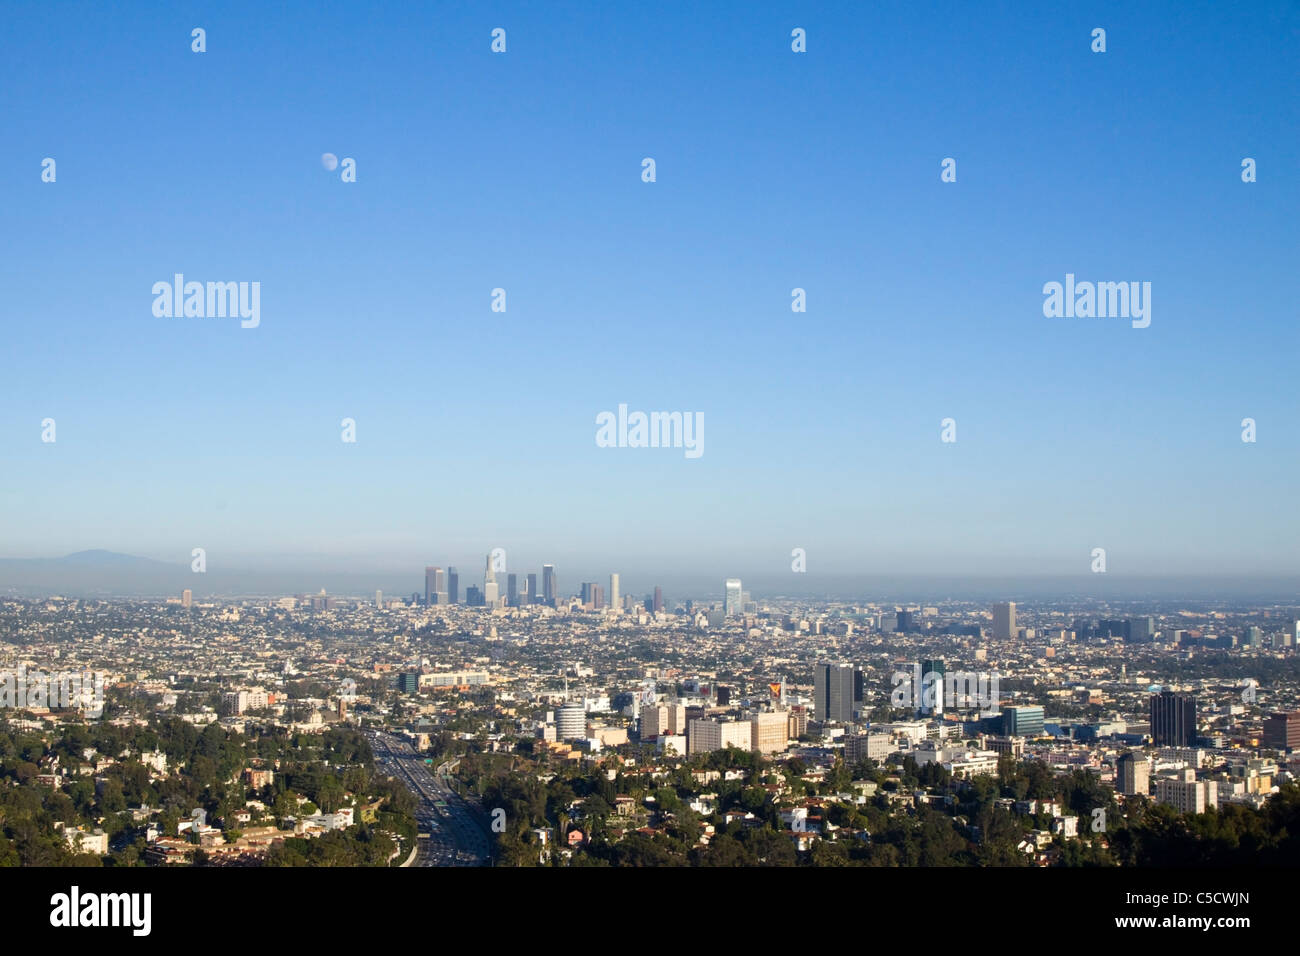 El horizonte de Los Angeles Foto de stock